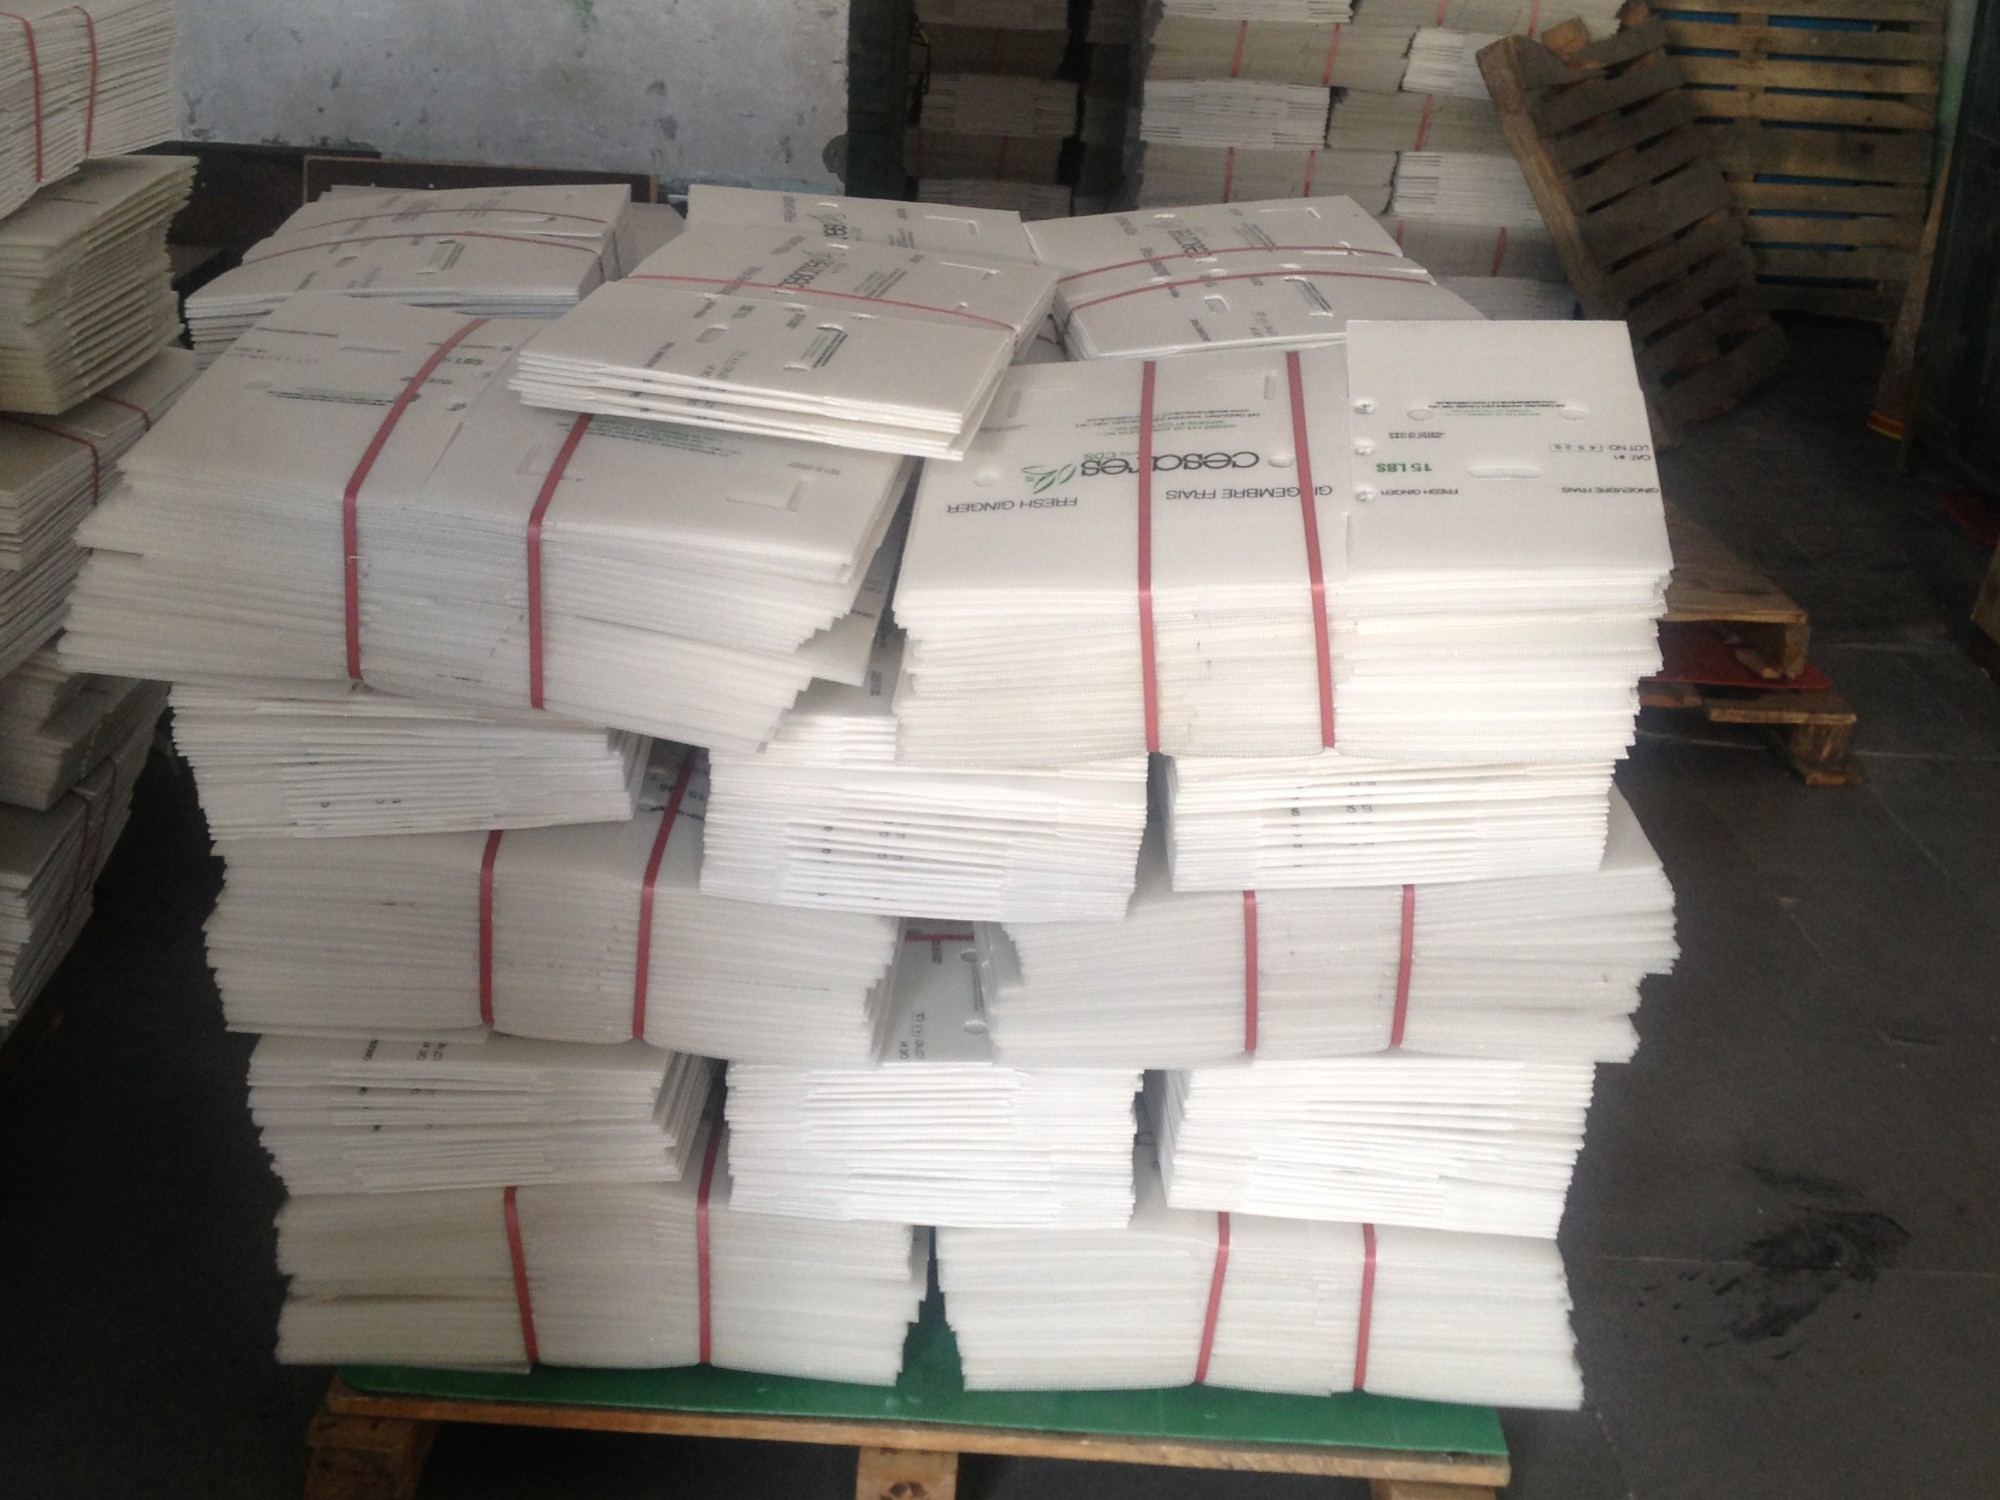 ซื้อpp แผ่นกระดาษลูกฟูกพลาสติกสีขาวในประเทศจีน Alands PLastic,pp แผ่นกระดาษลูกฟูกพลาสติกสีขาวในประเทศจีน Alands PLasticราคา,pp แผ่นกระดาษลูกฟูกพลาสติกสีขาวในประเทศจีน Alands PLasticแบรนด์,pp แผ่นกระดาษลูกฟูกพลาสติกสีขาวในประเทศจีน Alands PLasticผู้ผลิต,pp แผ่นกระดาษลูกฟูกพลาสติกสีขาวในประเทศจีน Alands PLasticสภาวะตลาด,pp แผ่นกระดาษลูกฟูกพลาสติกสีขาวในประเทศจีน Alands PLasticบริษัท